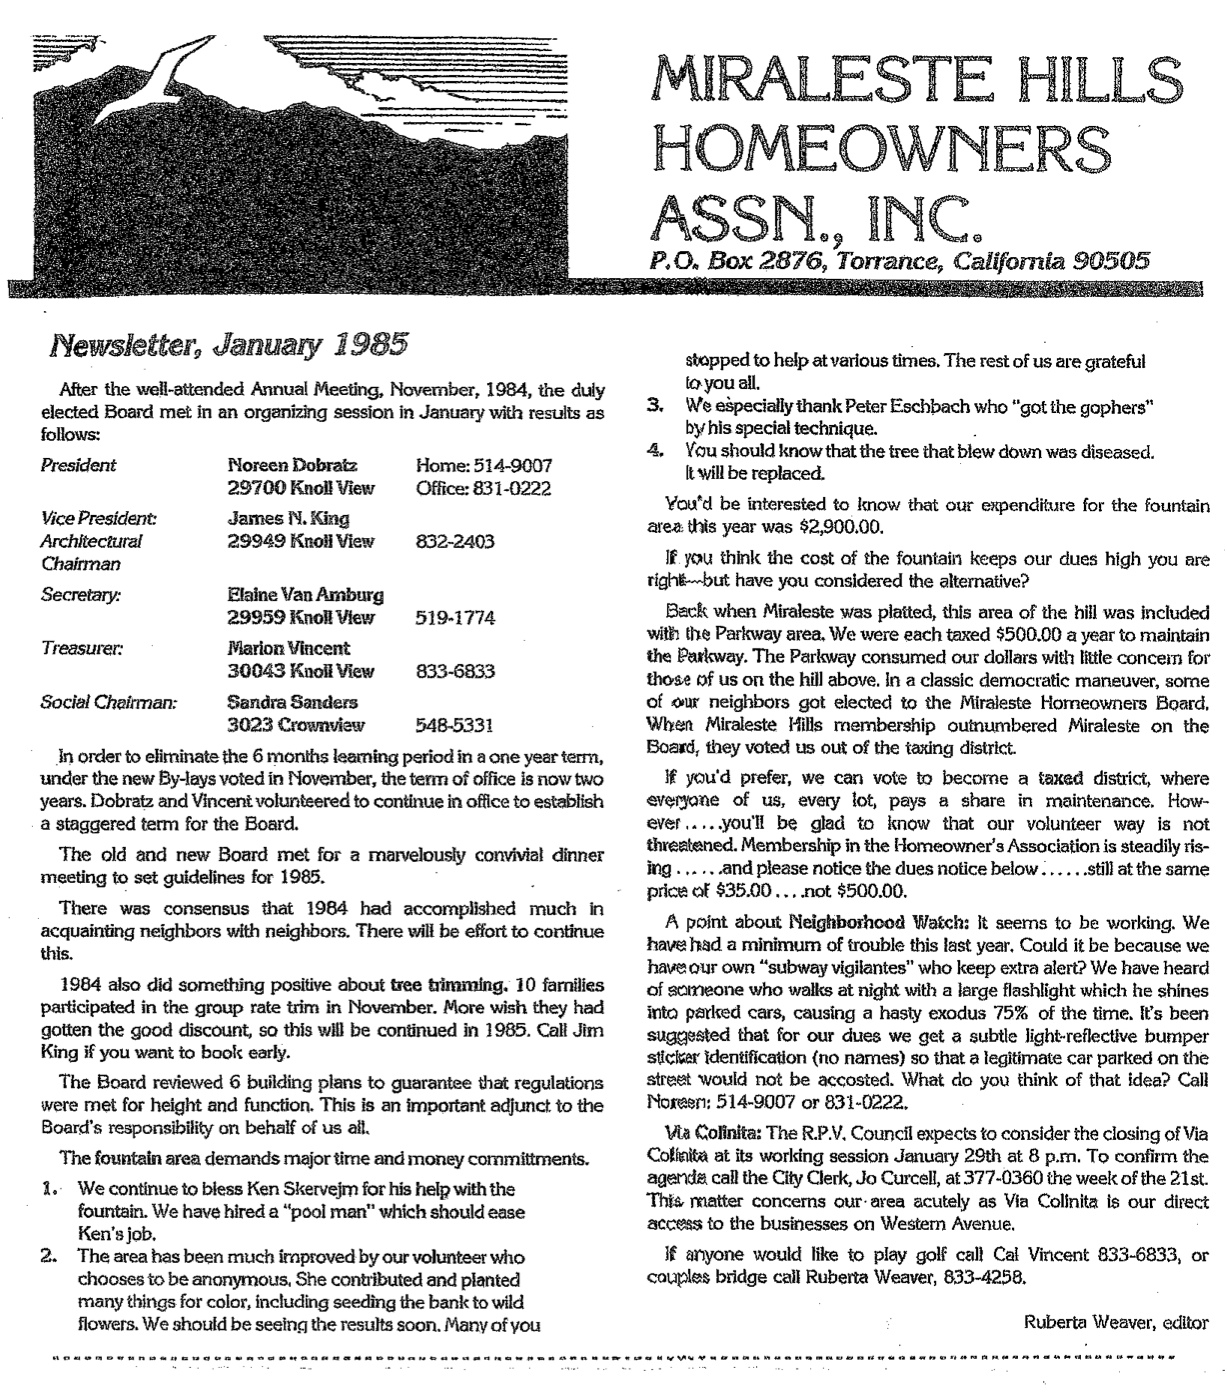 MH HOA Newsletter_1985